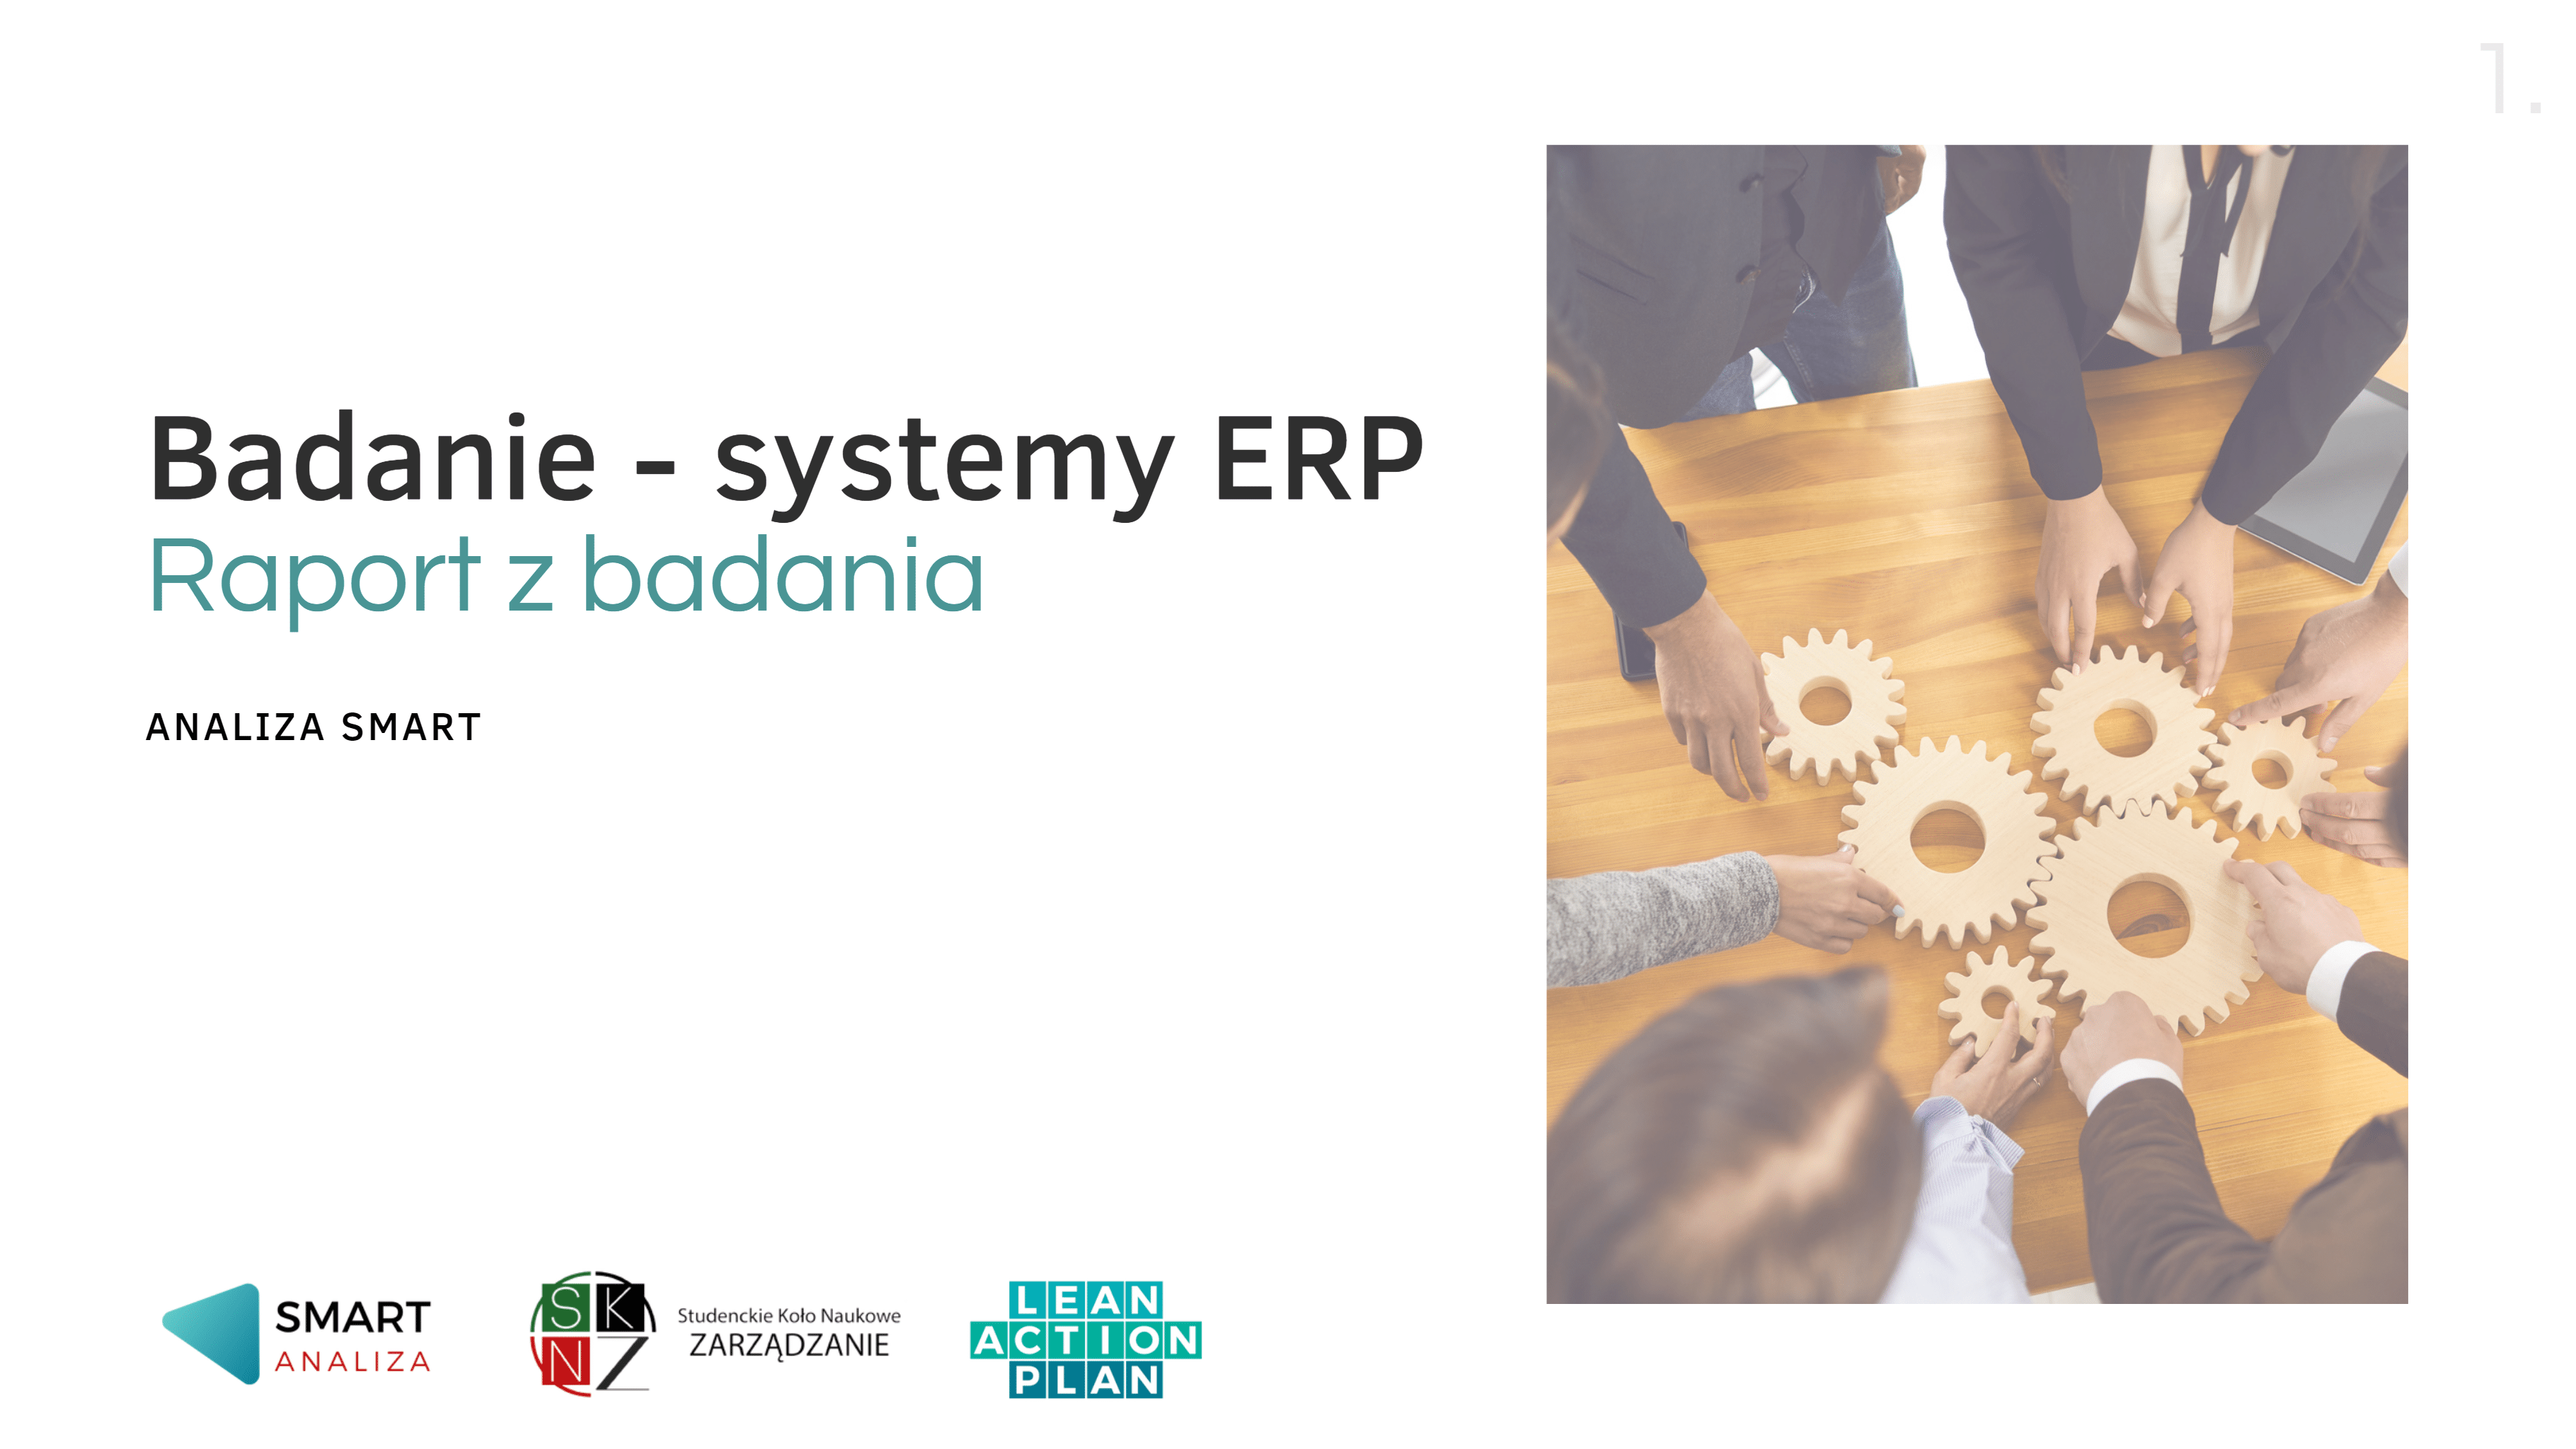 Badanie - systemy ERP, Raport z badania